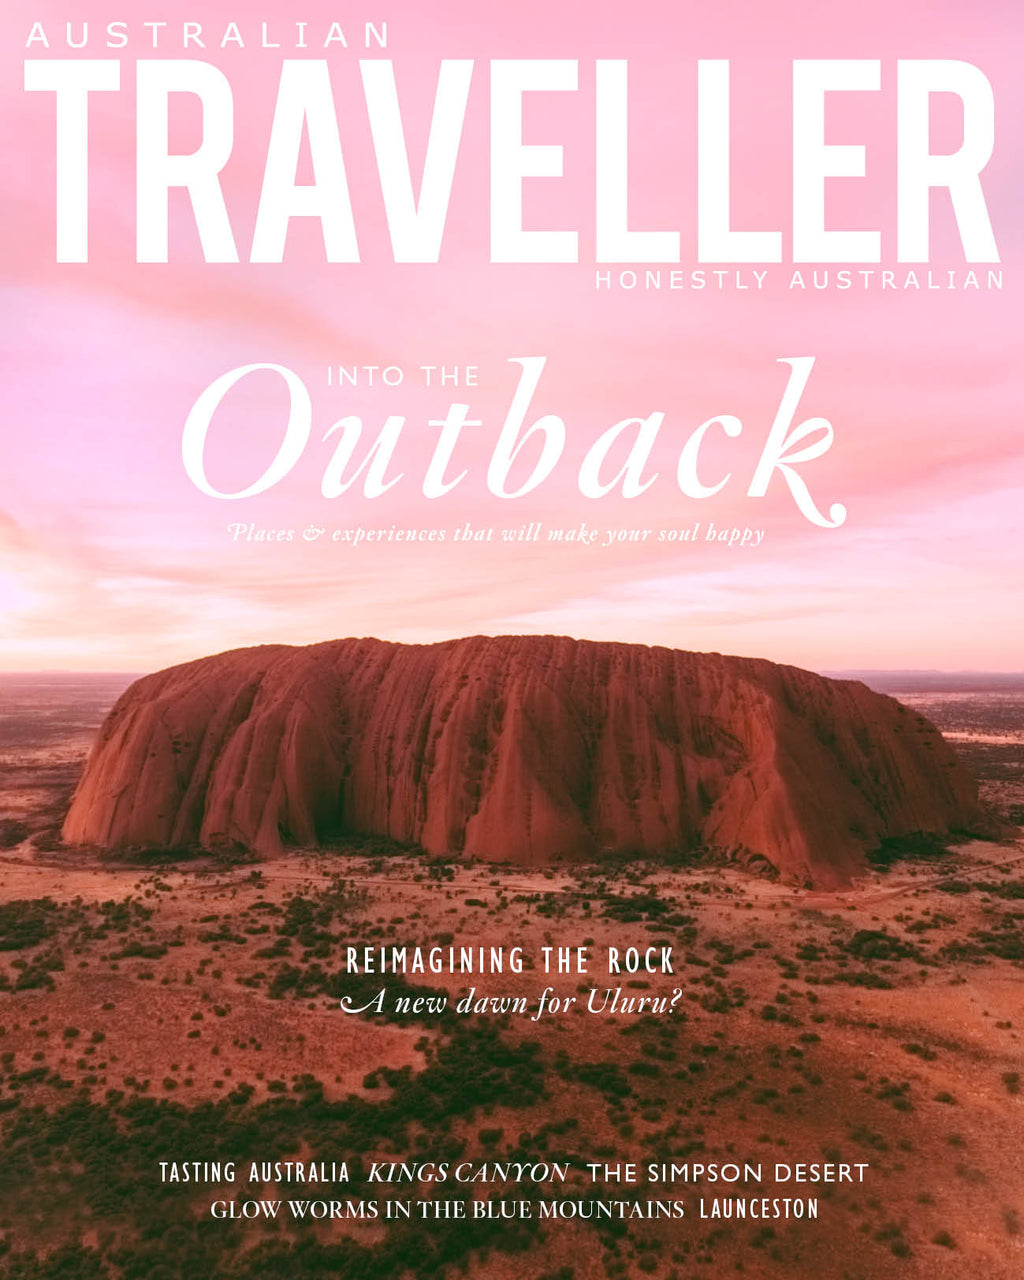 Australian Traveller Issue 86 (Feb/Mar/Apr 2020)